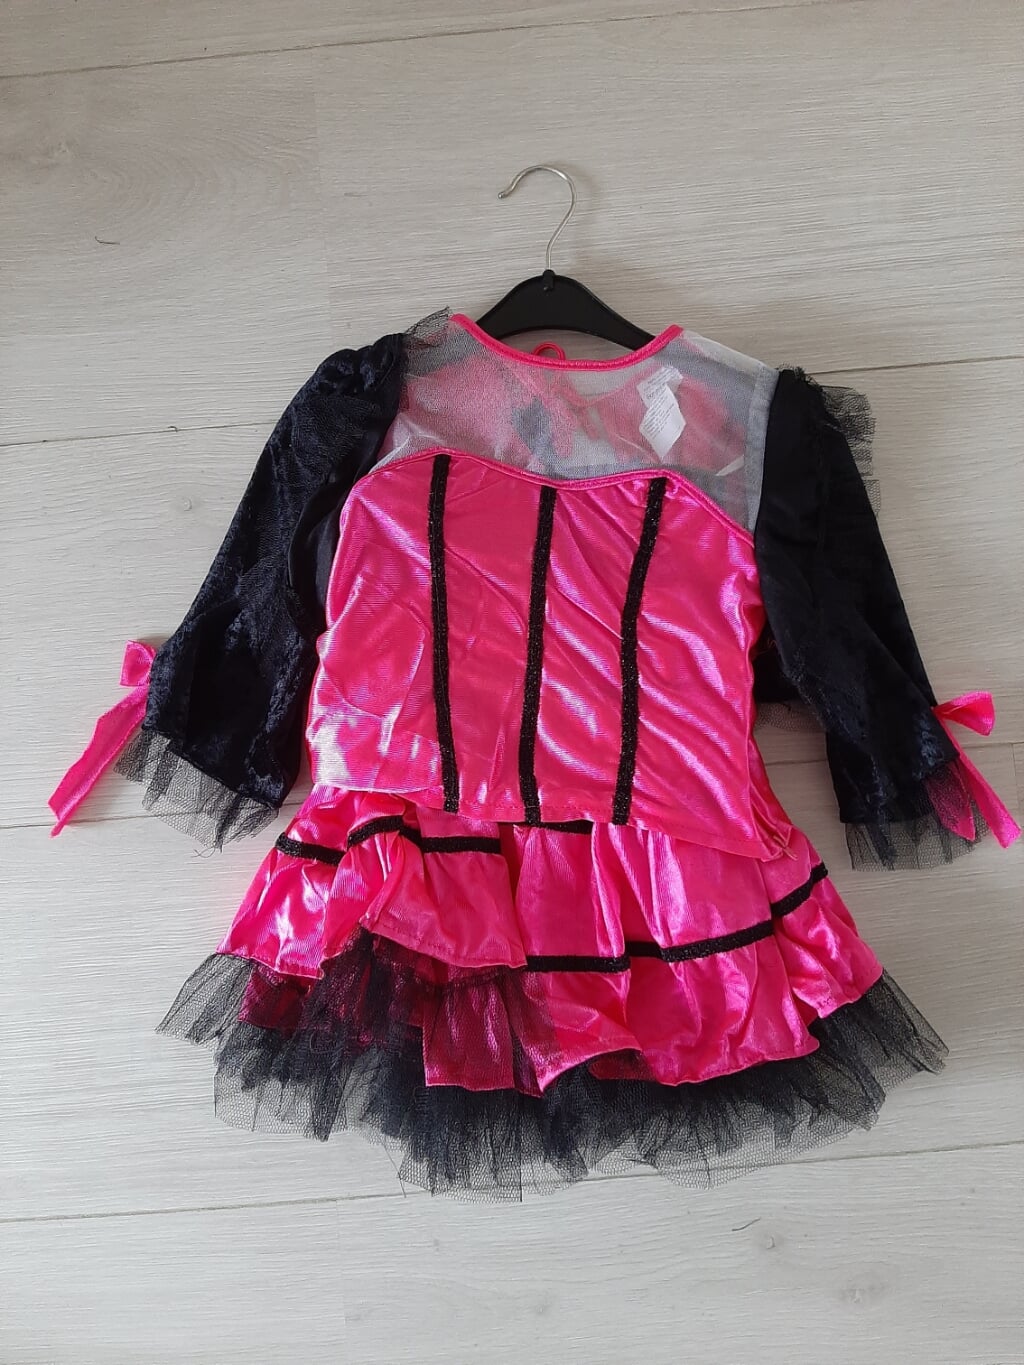 12 Zwart/roze (dans)jurkjes € 6,50 / stuk; € 65,-